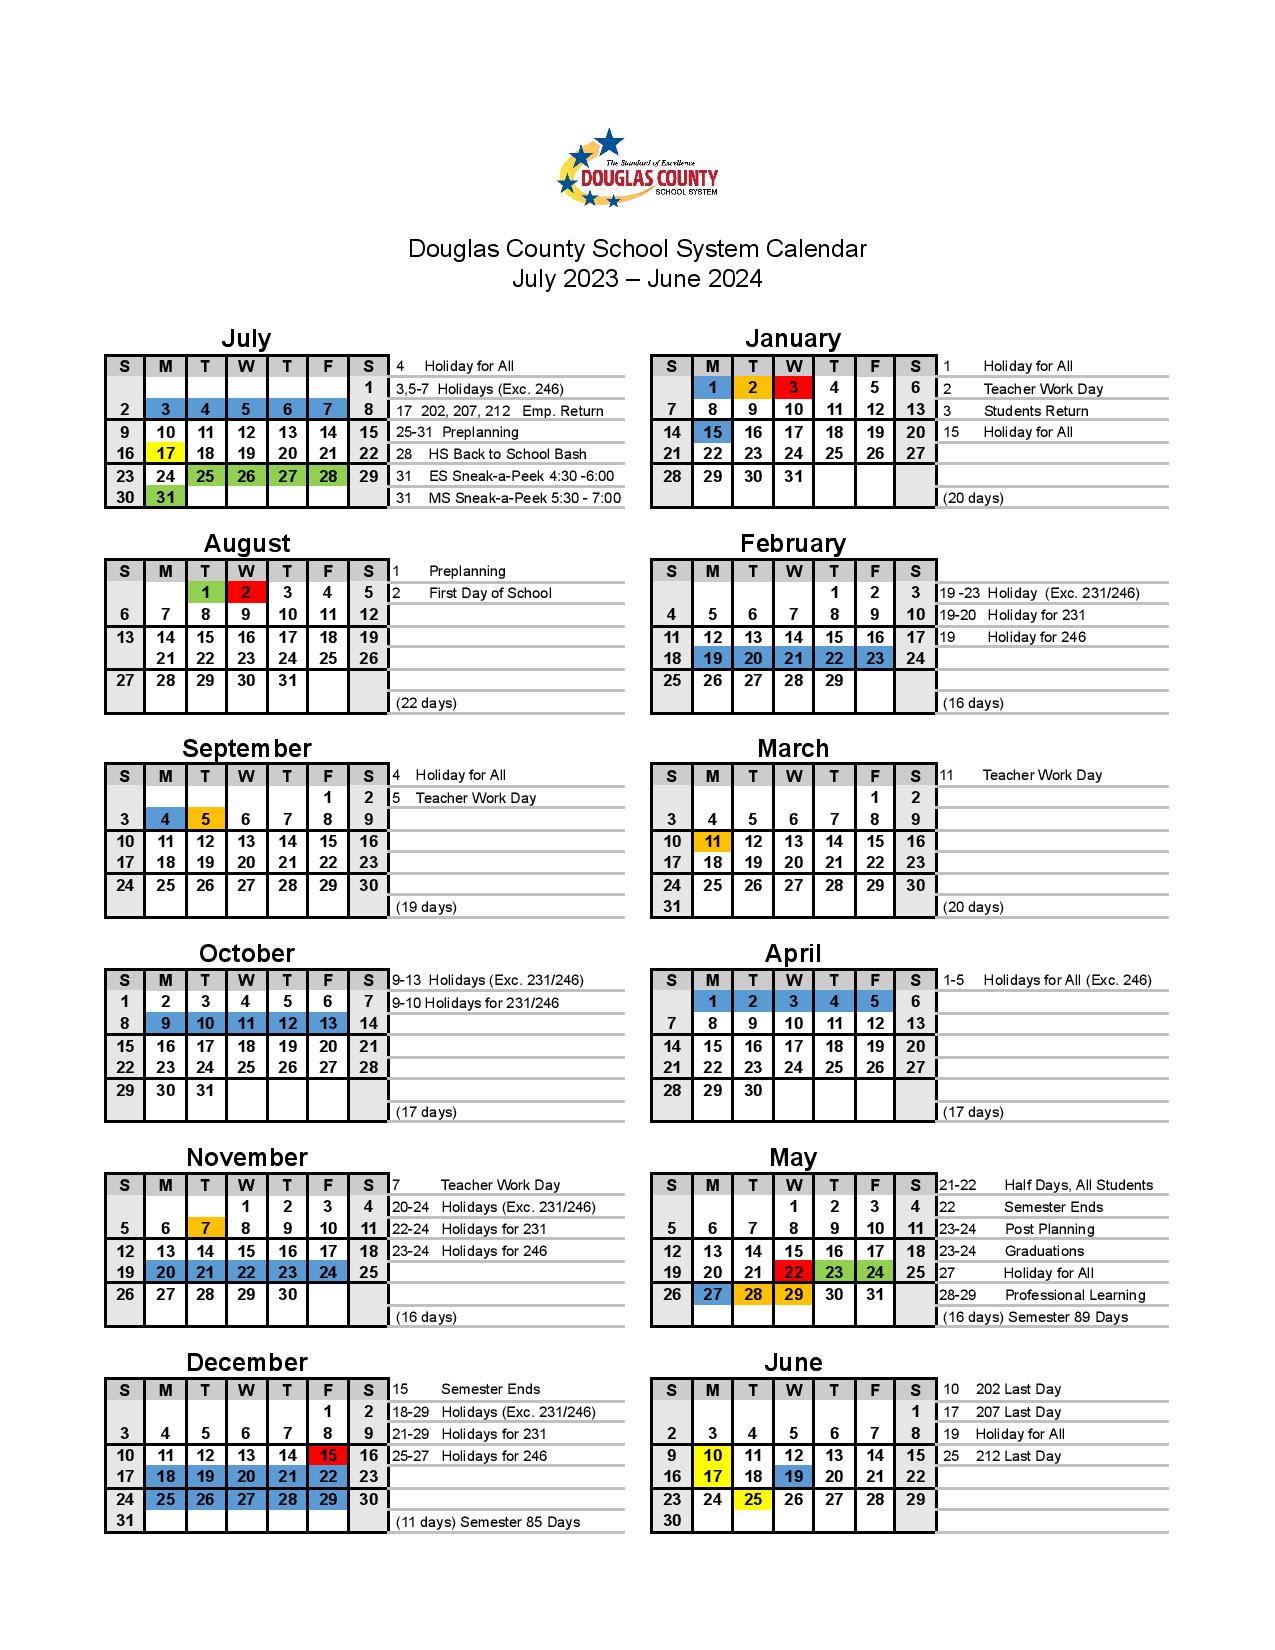 Douglas County Schools Calendar 2023-2024 in PDF